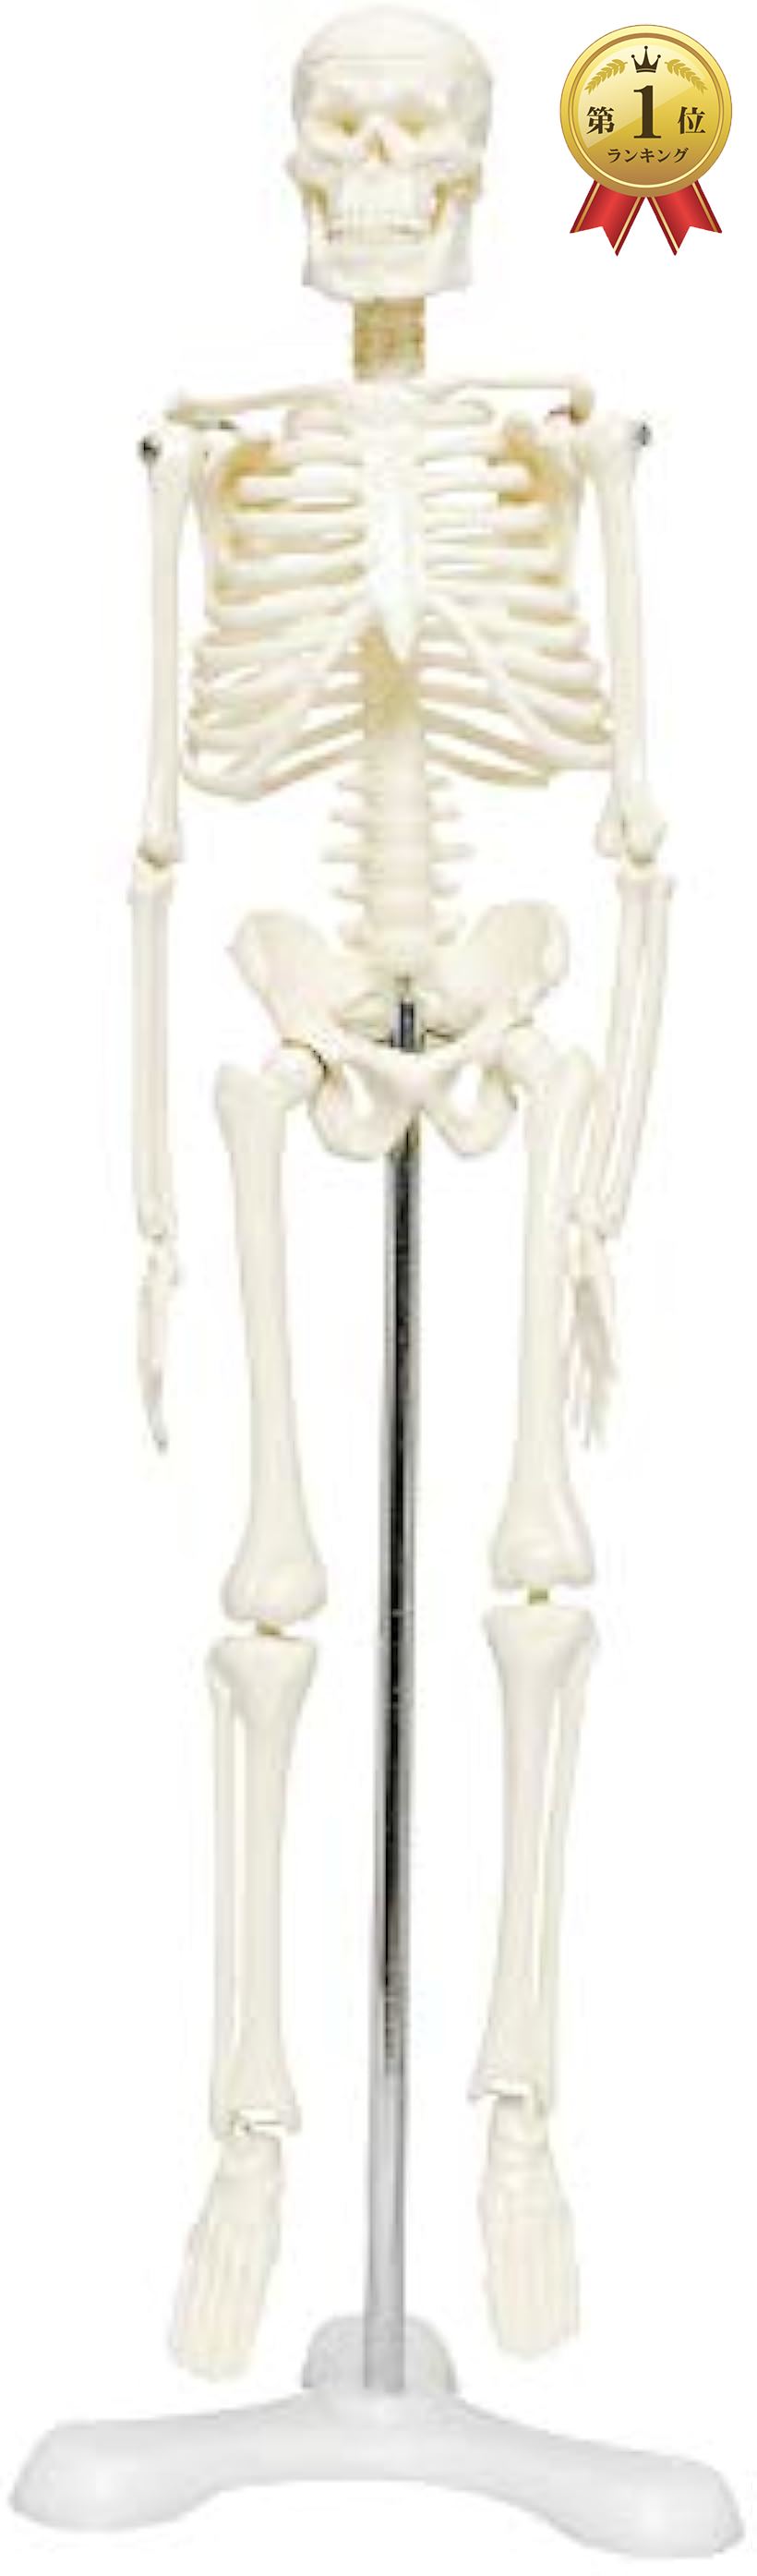 MONOLIFE 人体骨格模型 骨格標本 稼動 直立 スタンド 全店販売中 買い取り 教材 ホワイト 4 45cm 三つ足 1 モデル 台座